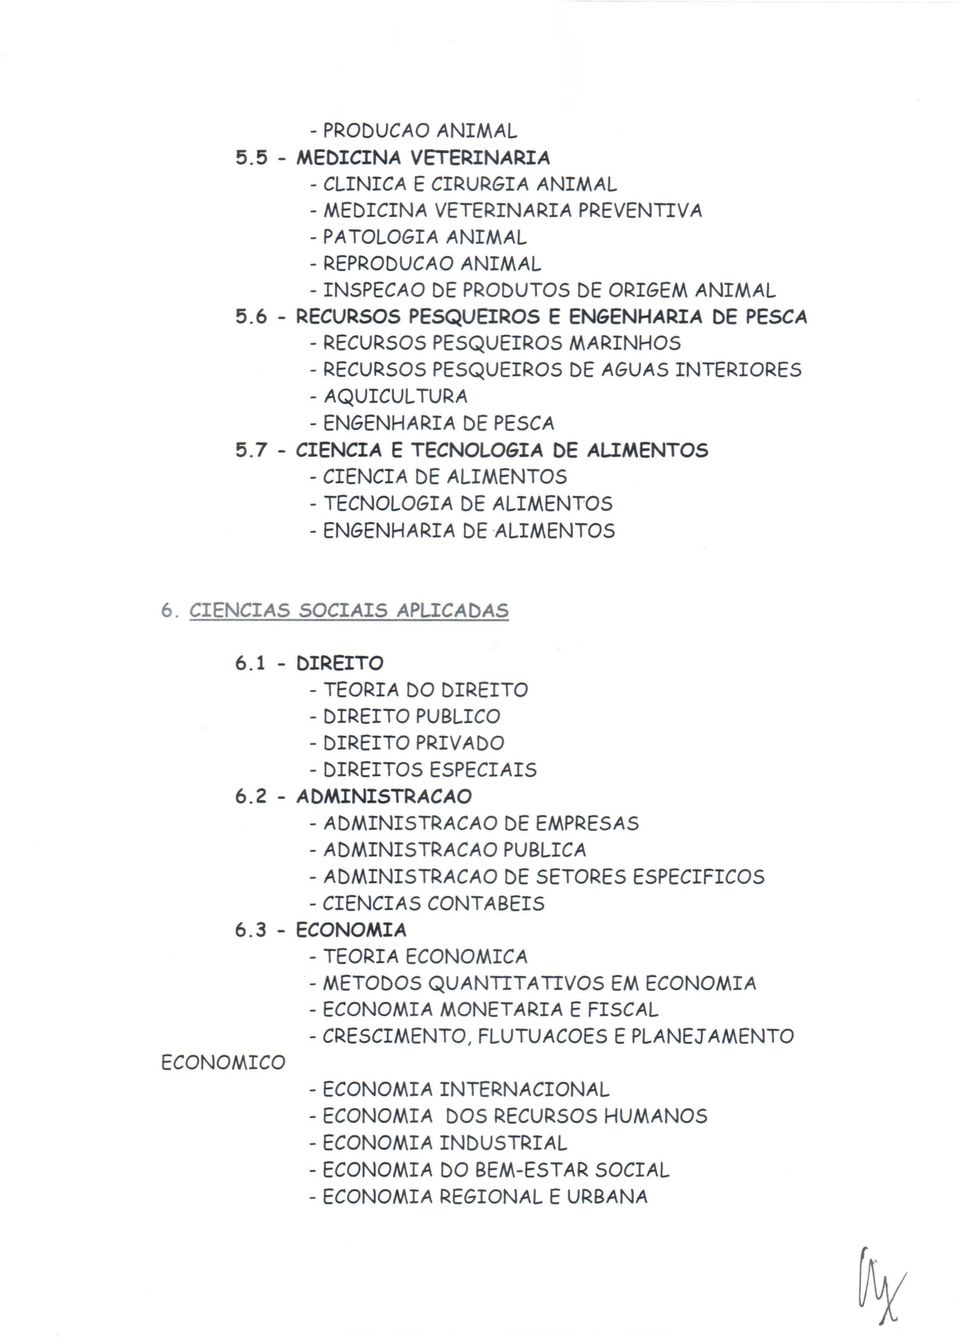 7 - CIECIA E TECLGIA DE ALIMETS - CIECIA DE ALIMETS - TECLGIA DE ALIMETS - EGEARIA DE ALIMETS 6. CIECIAS SCIAIS APLICADAS 6.